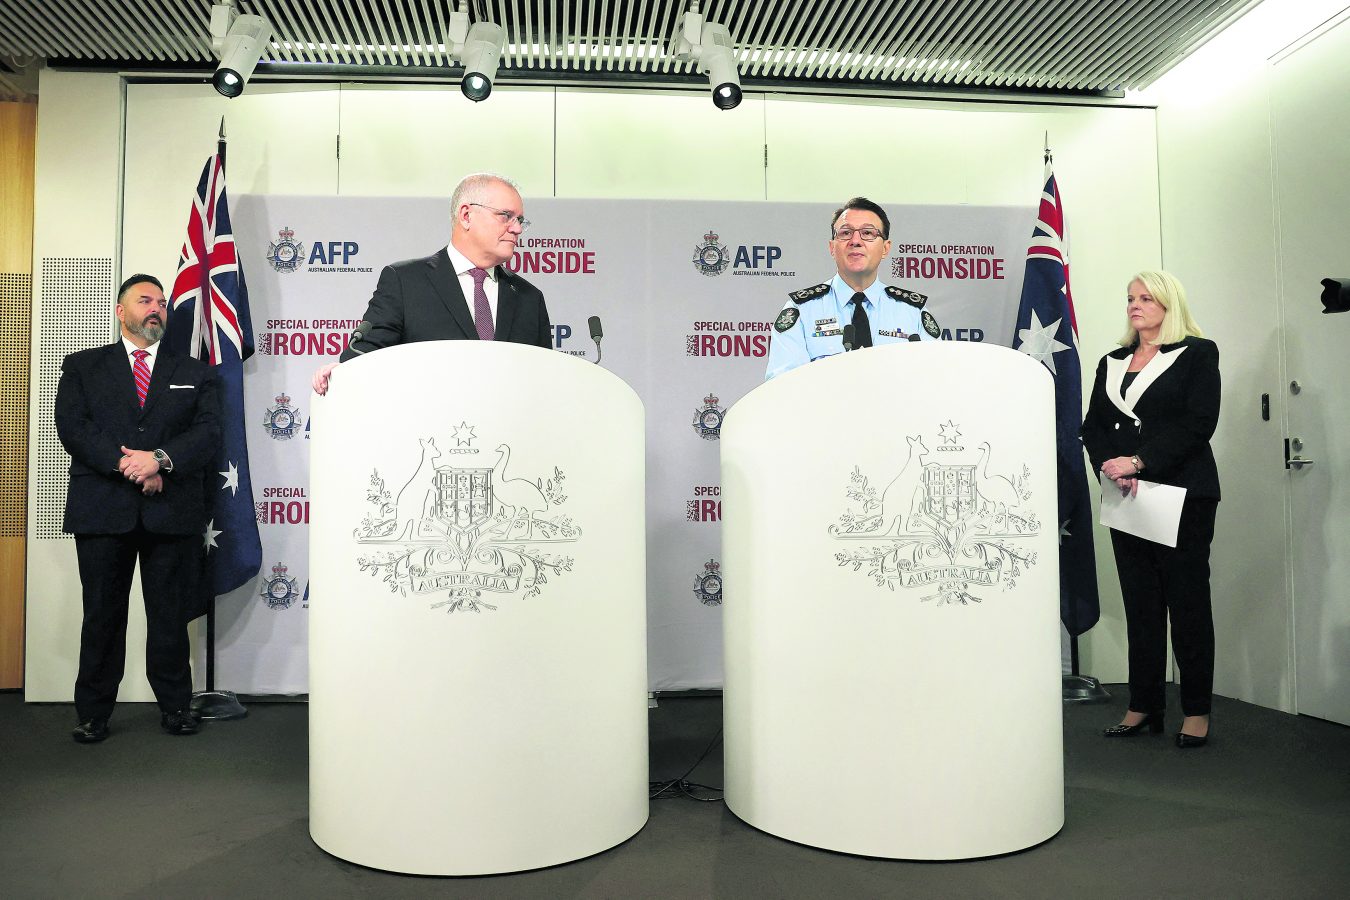 Avusturalya Başbakanı Scott Morrison ve polis şefi Kershaw operasyonu anlattı.